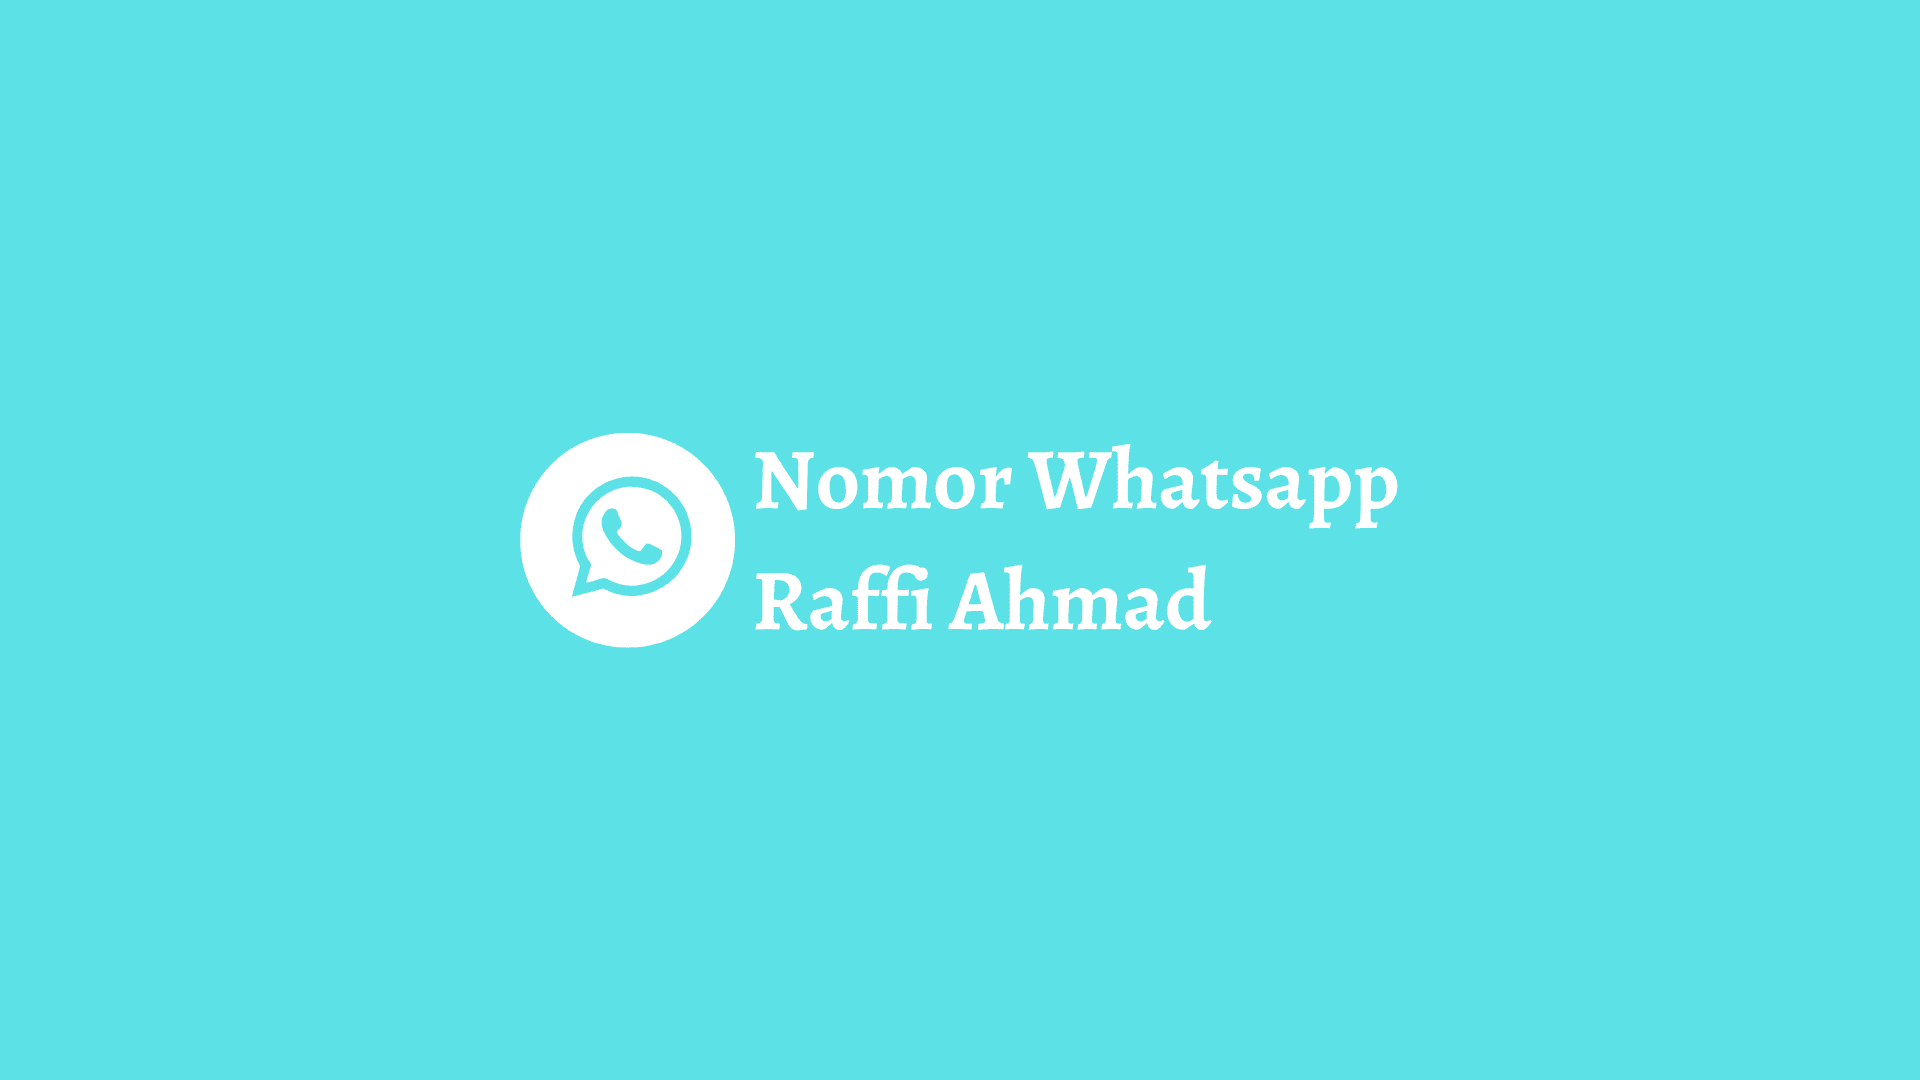 nomor whatsapp raffi ahmad yang asli